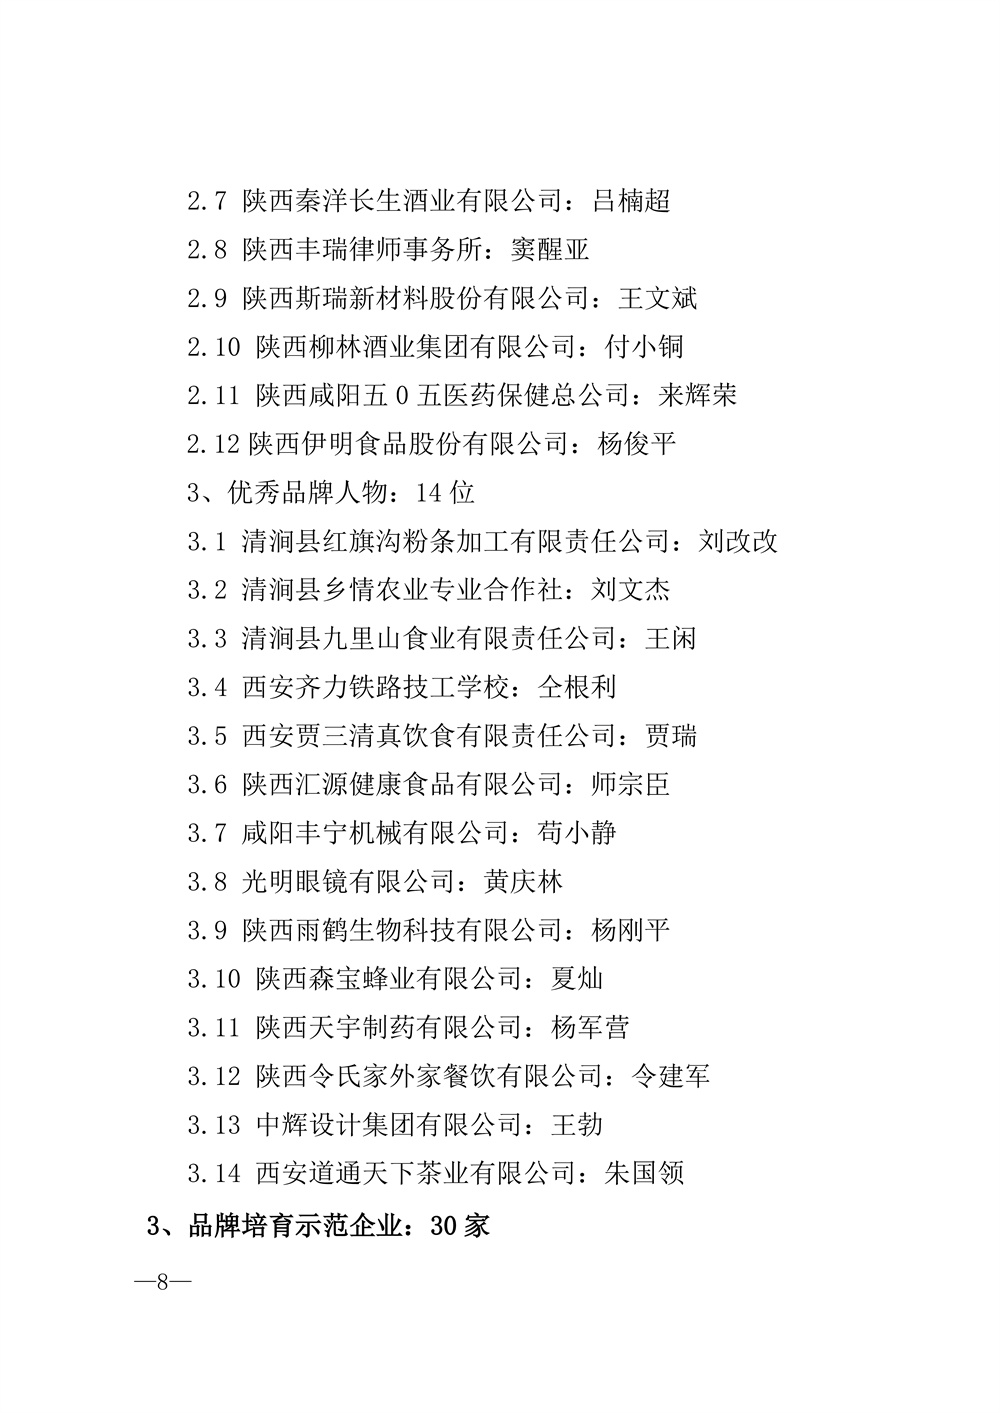 22-52陕西省2021年度品牌评选公示通知_页面_08.jpg